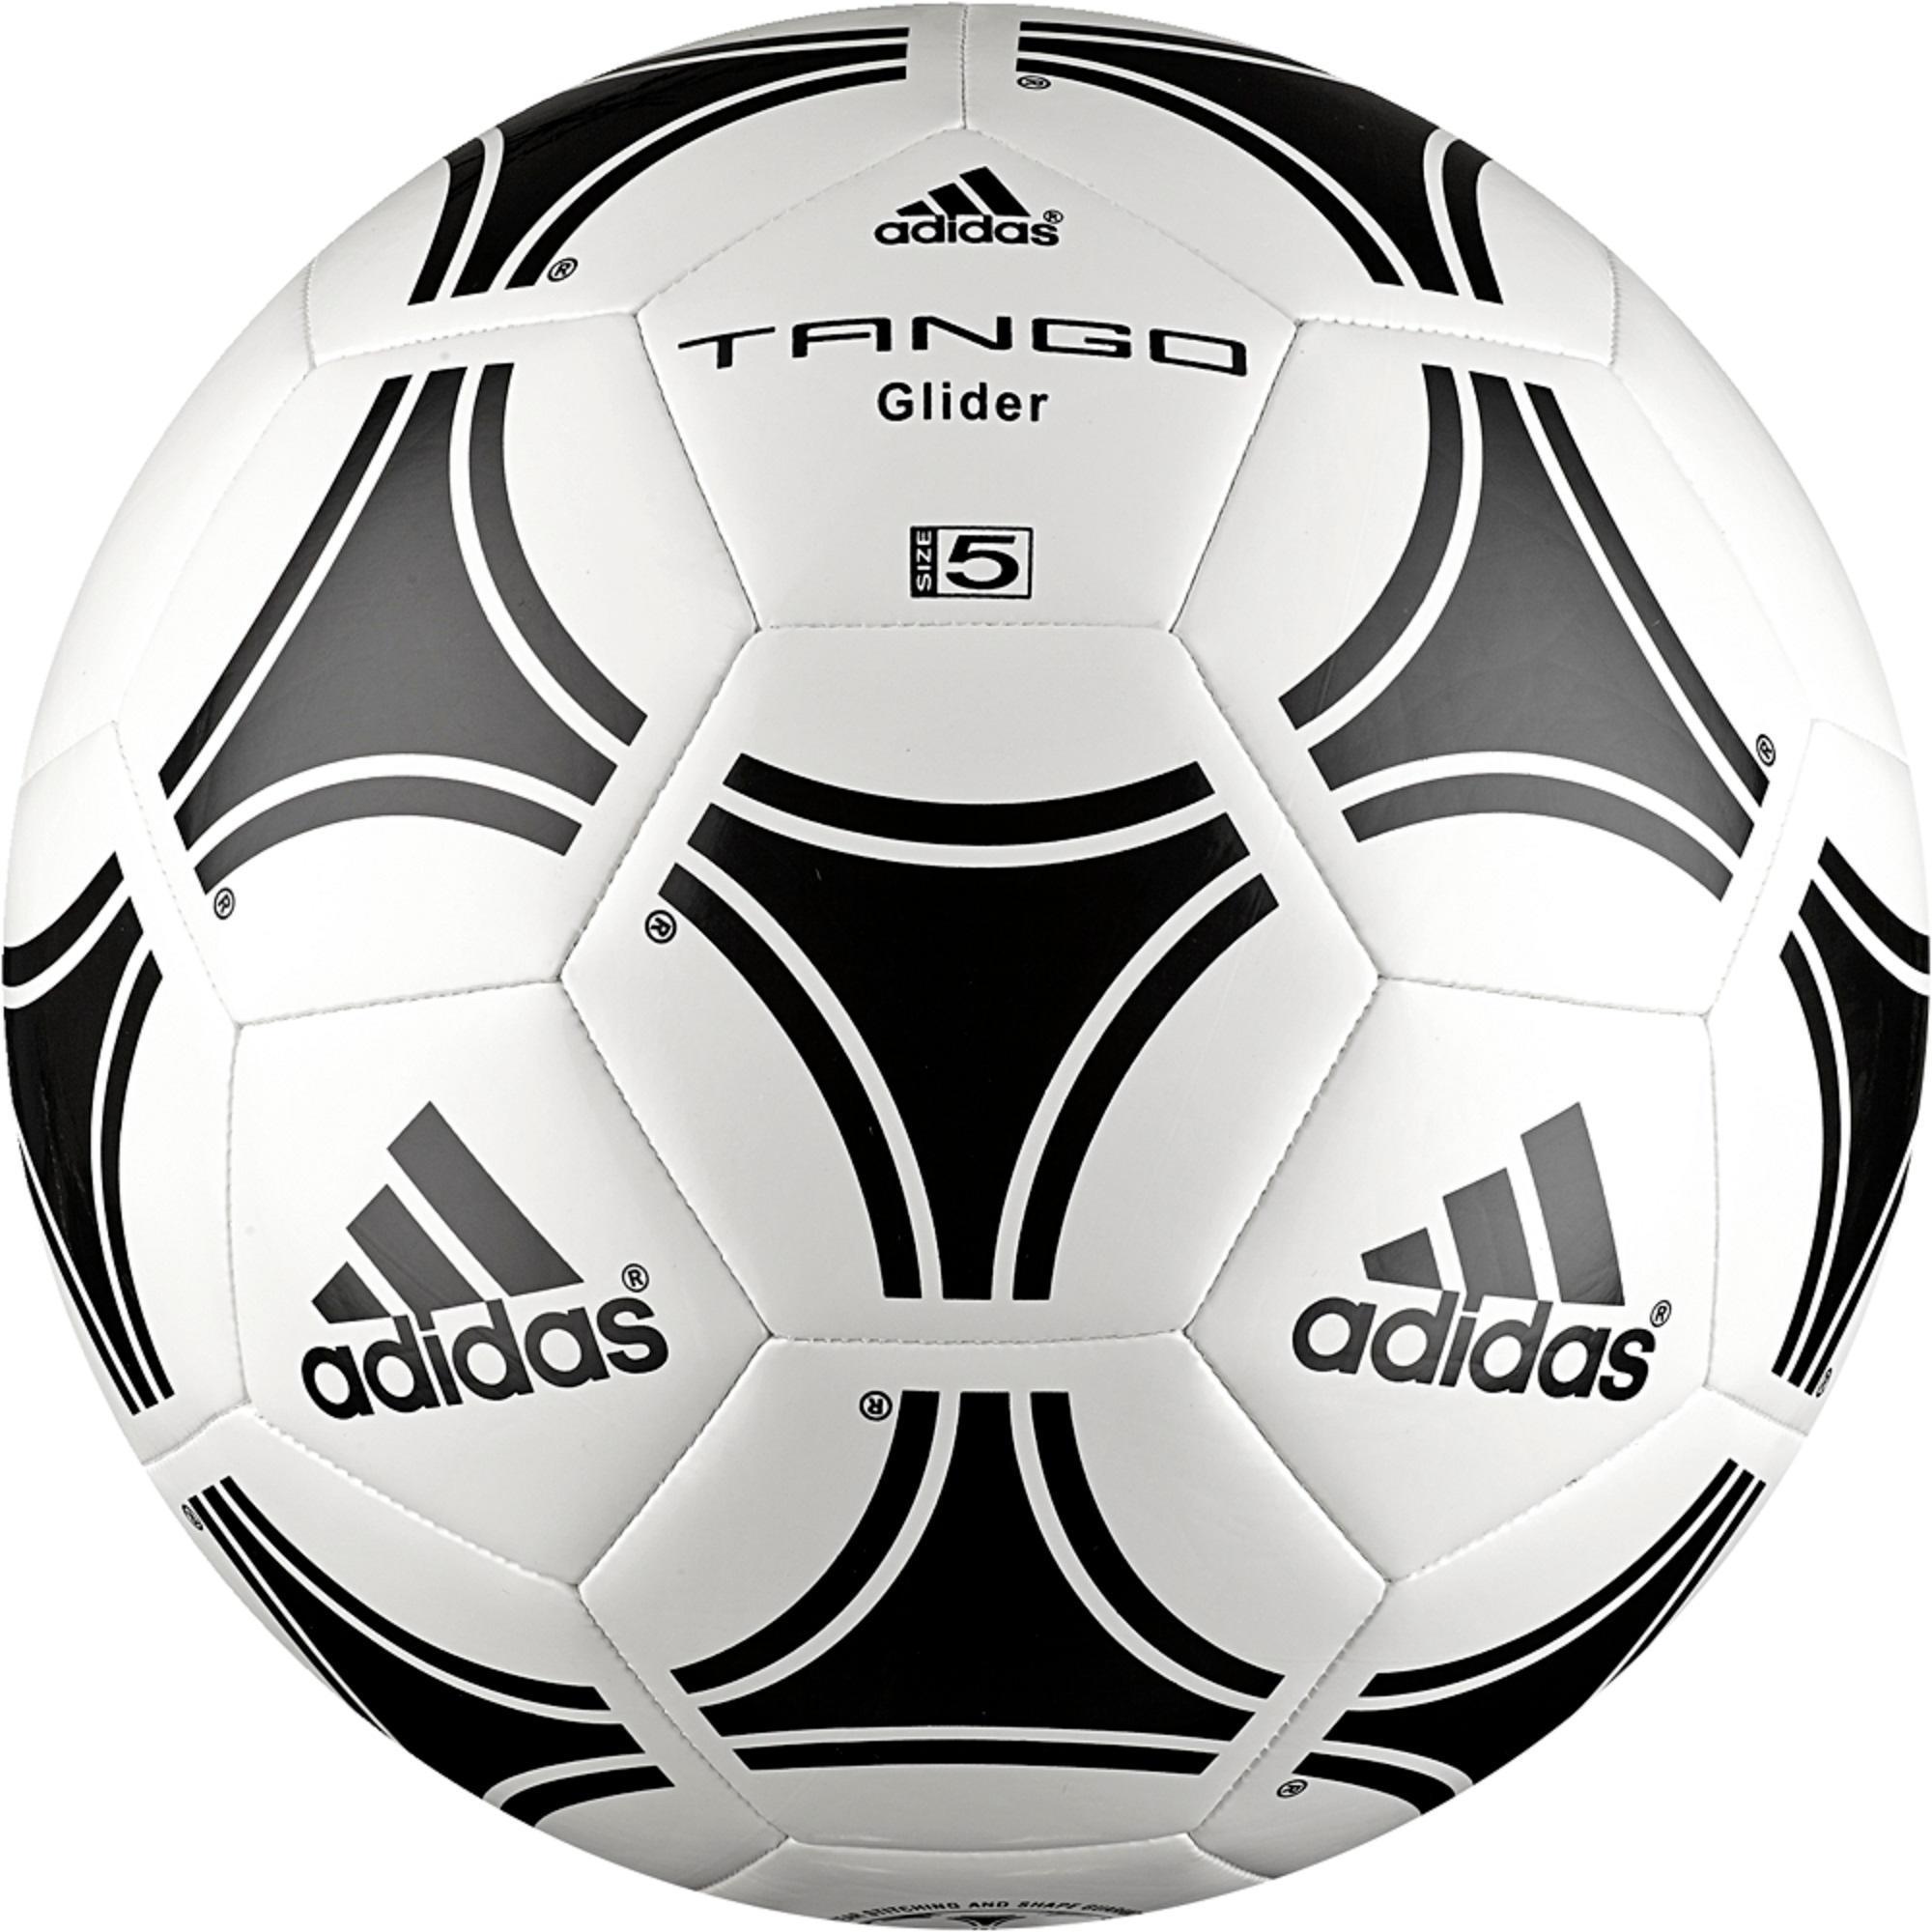 palloni adidas calcio a 5